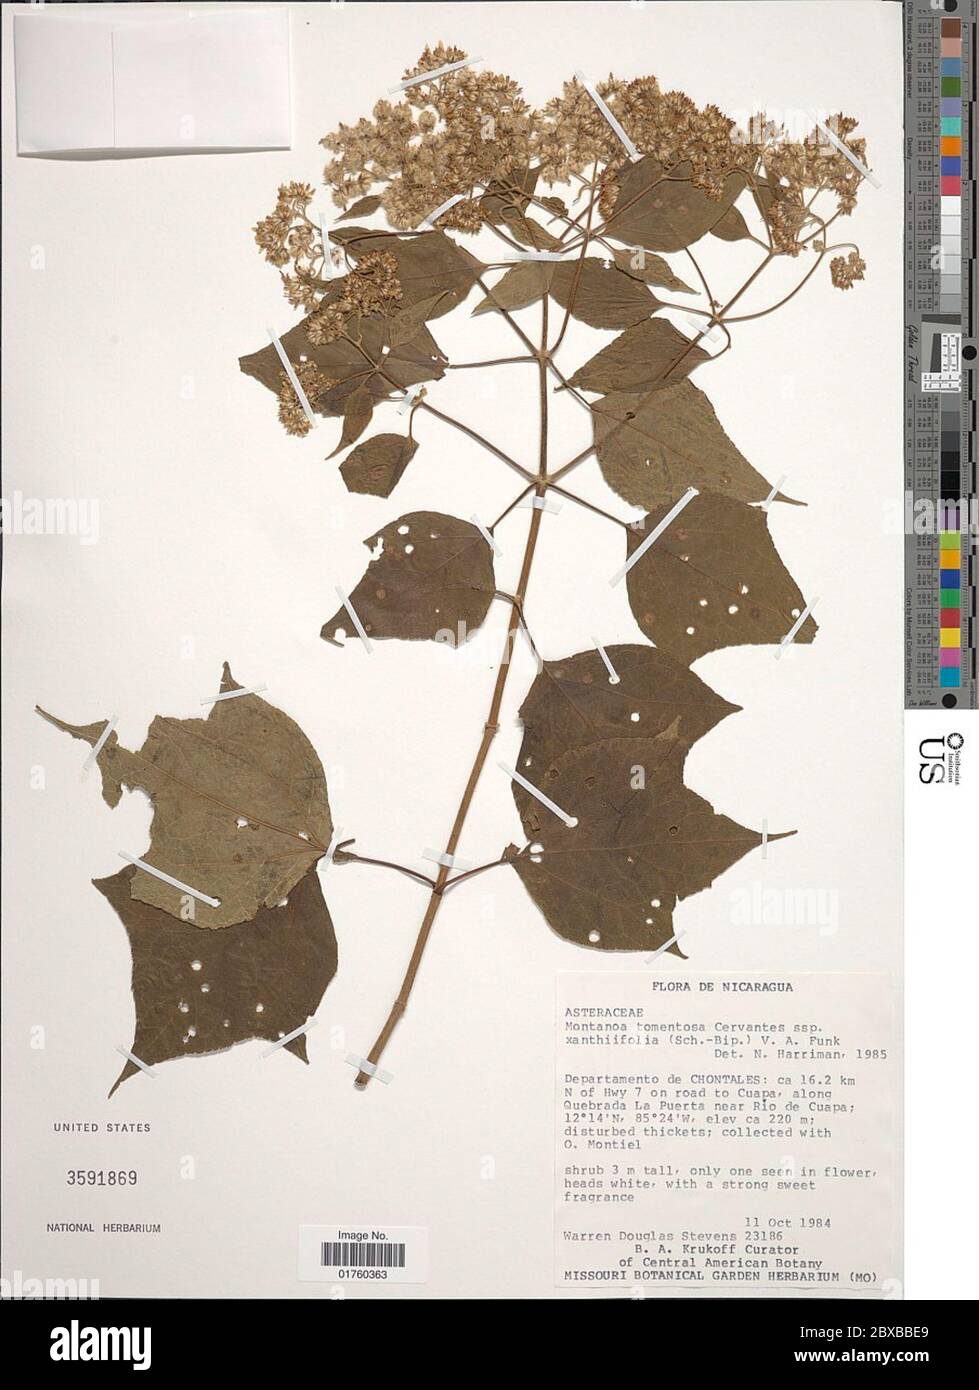 Montanoa tomentosa subsp xanthiifolia Schn BIP in C Koch VA Funk Montanoa tomentosa subsp xanthiifolia Schn BIP in C Koch VA Funk. Stockfoto